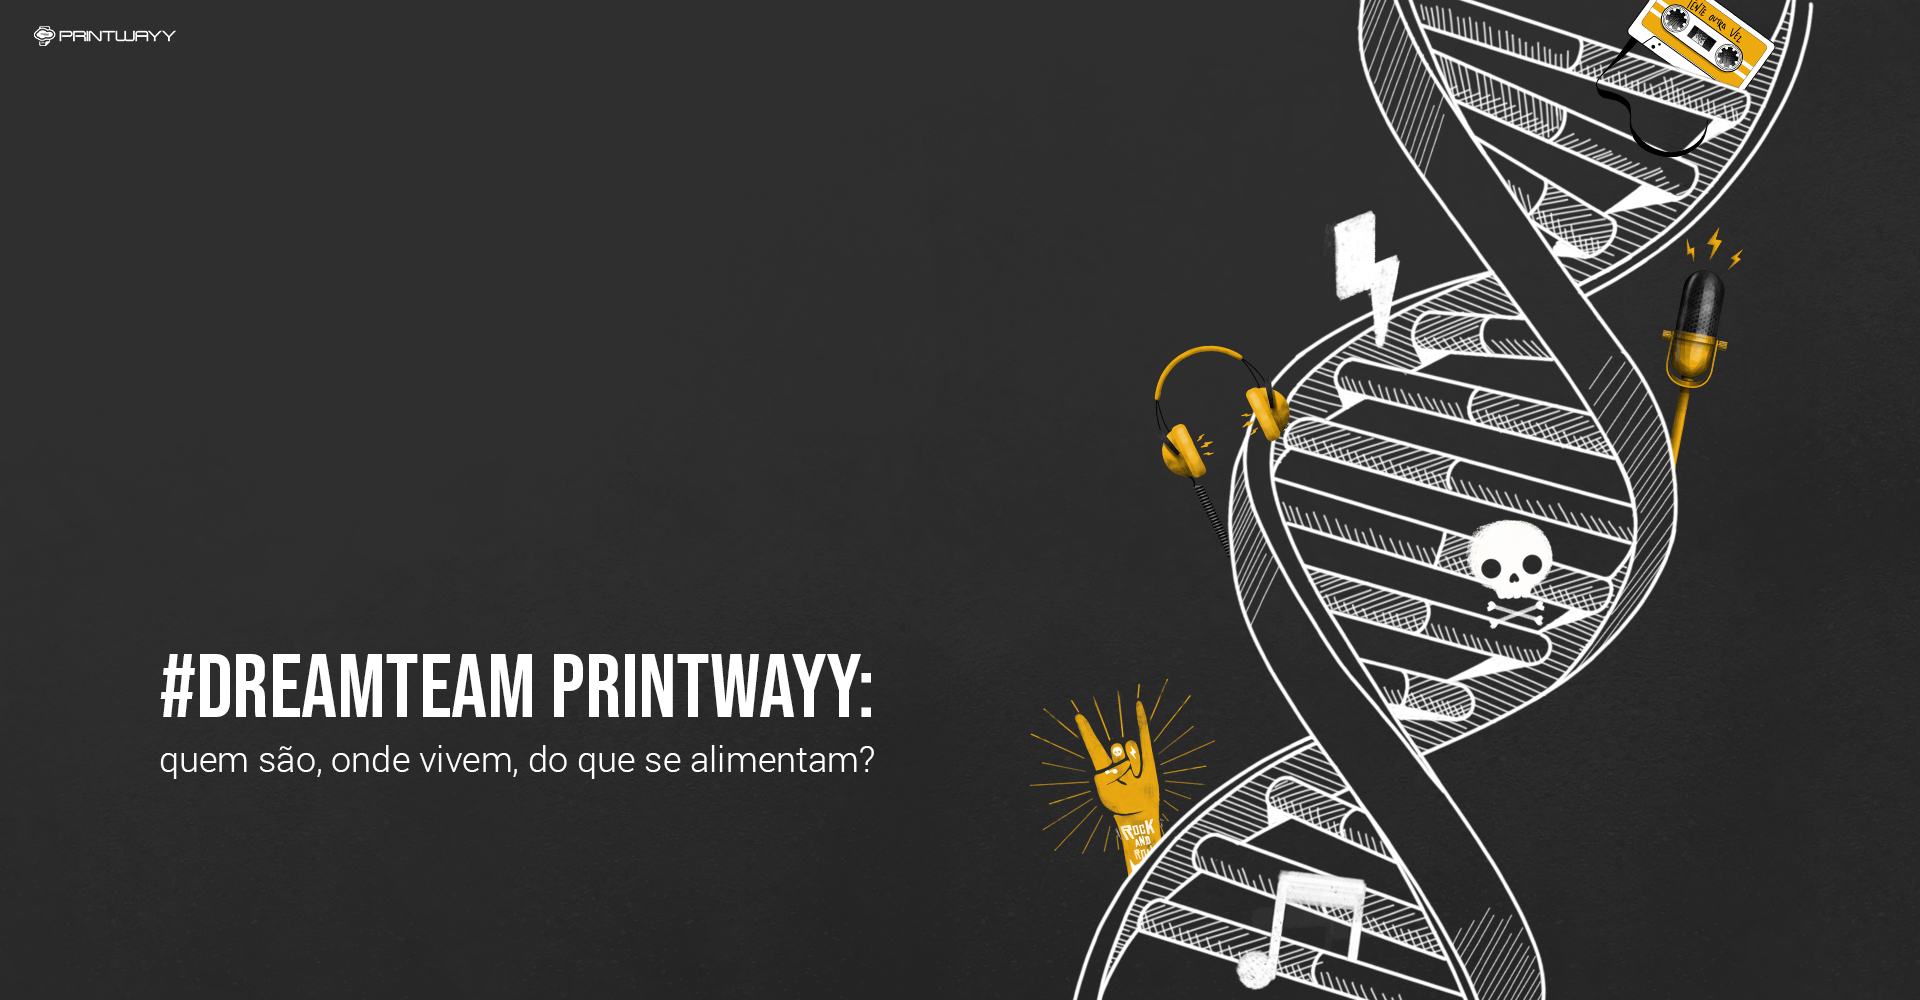 Imagem símbolo do DNA com ícones do manifesto de cultura da PrintWayy.